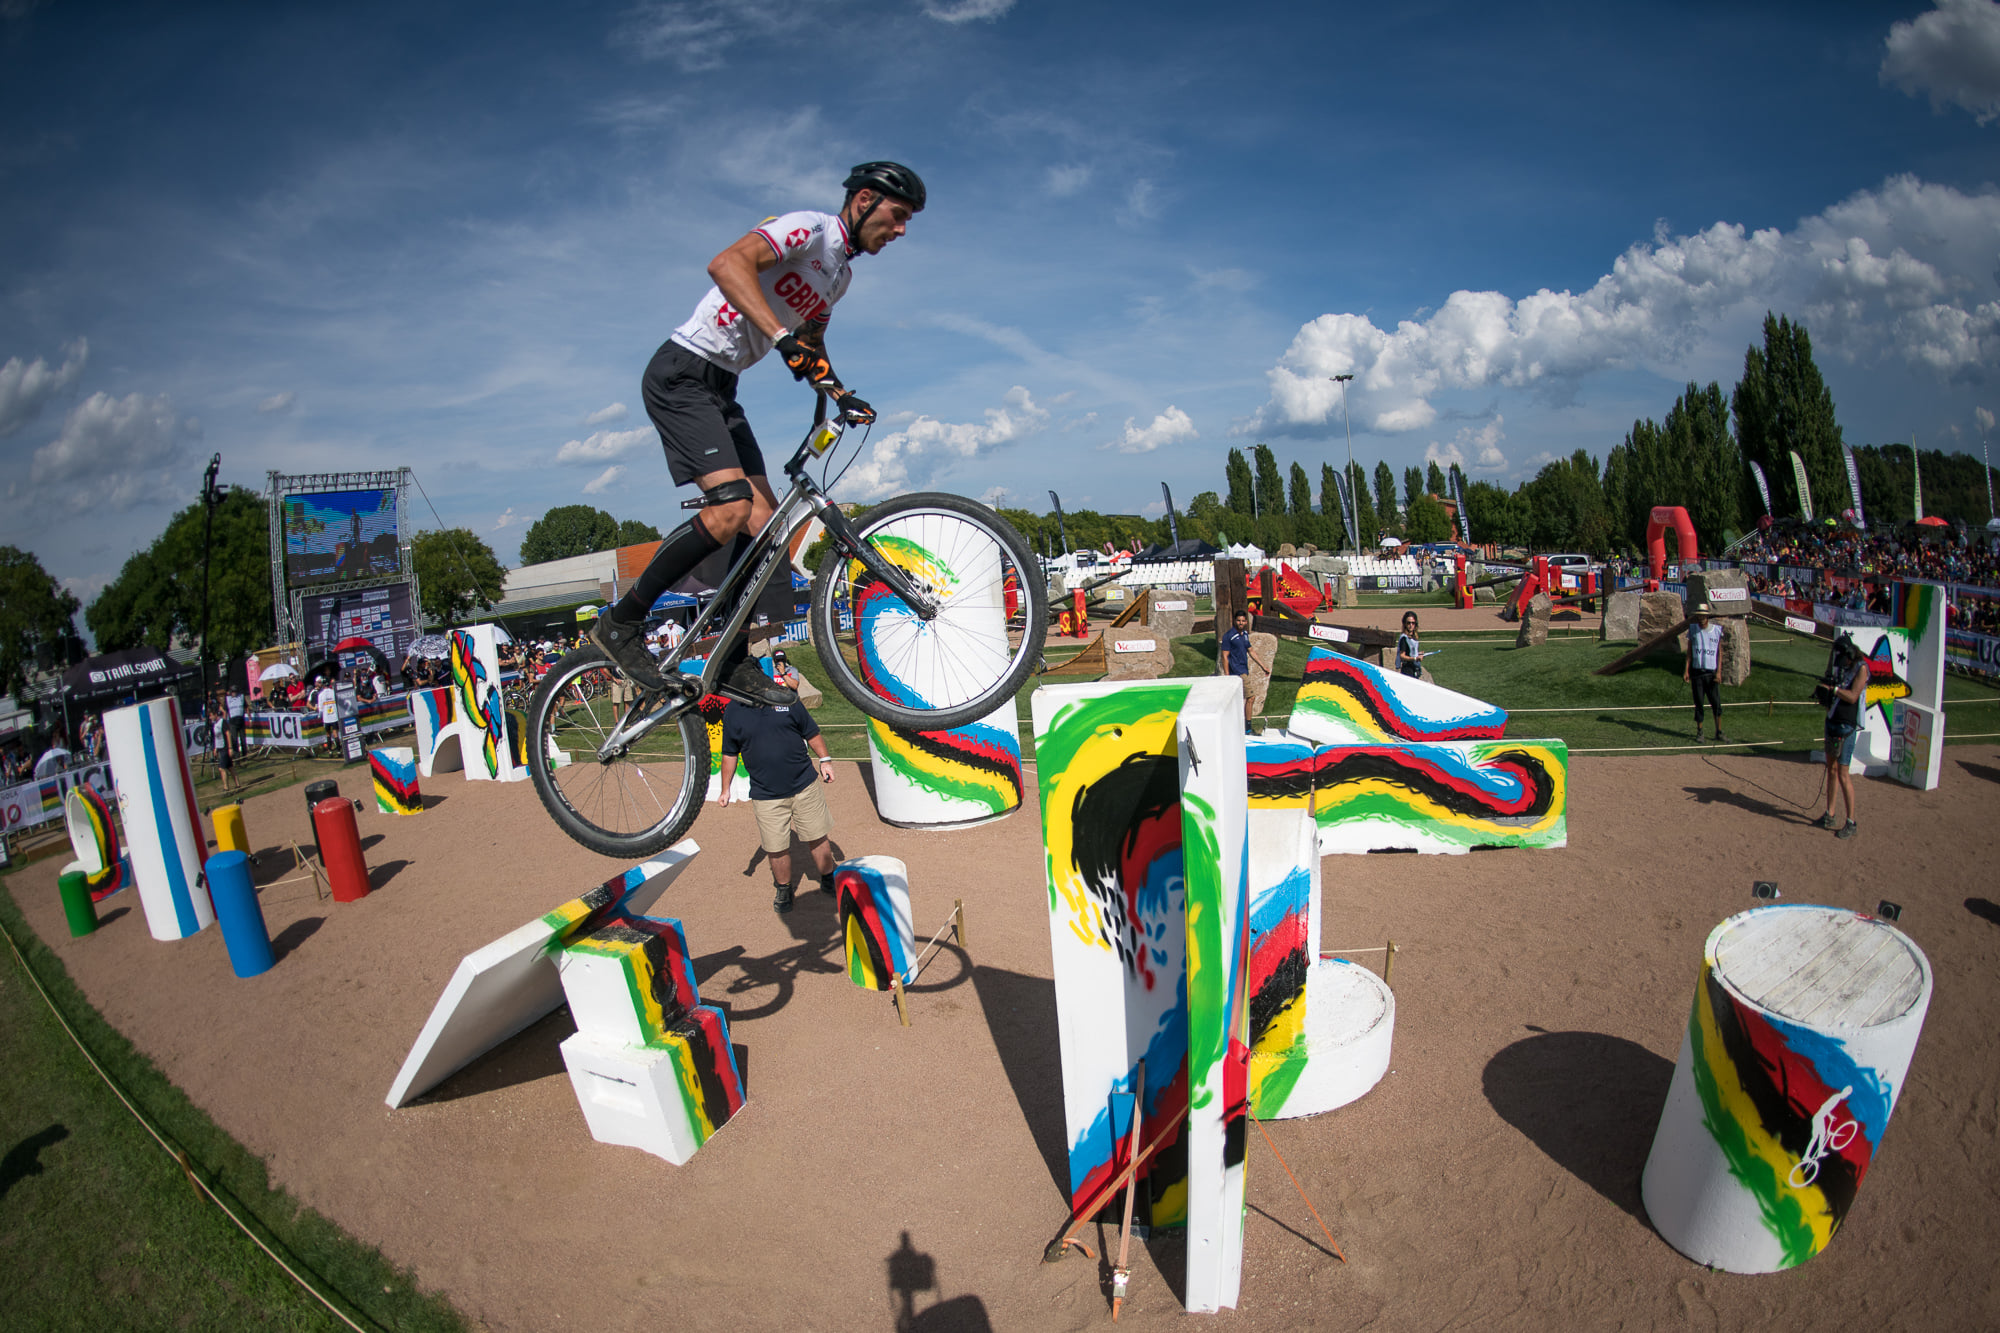 Jack Carthy Campeón del Mundo UCI Trial Bici 2021